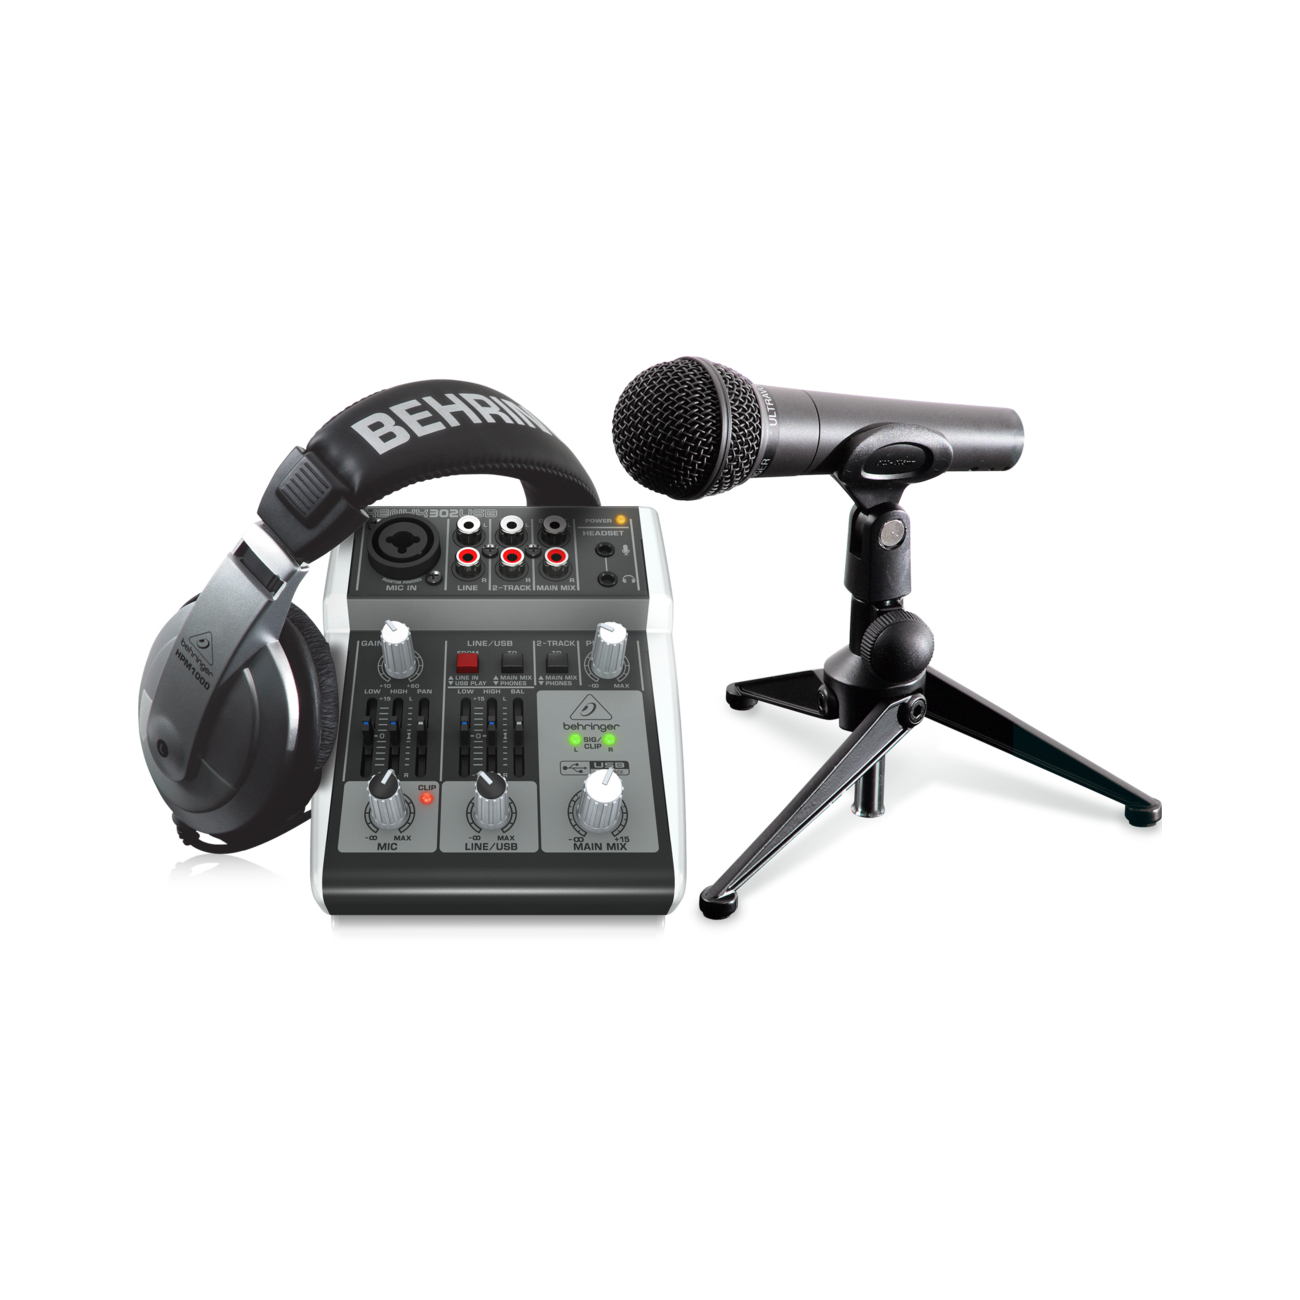 Портастудии Behringer Podcastudio 2 USB студийные микрофоны behringer c 2